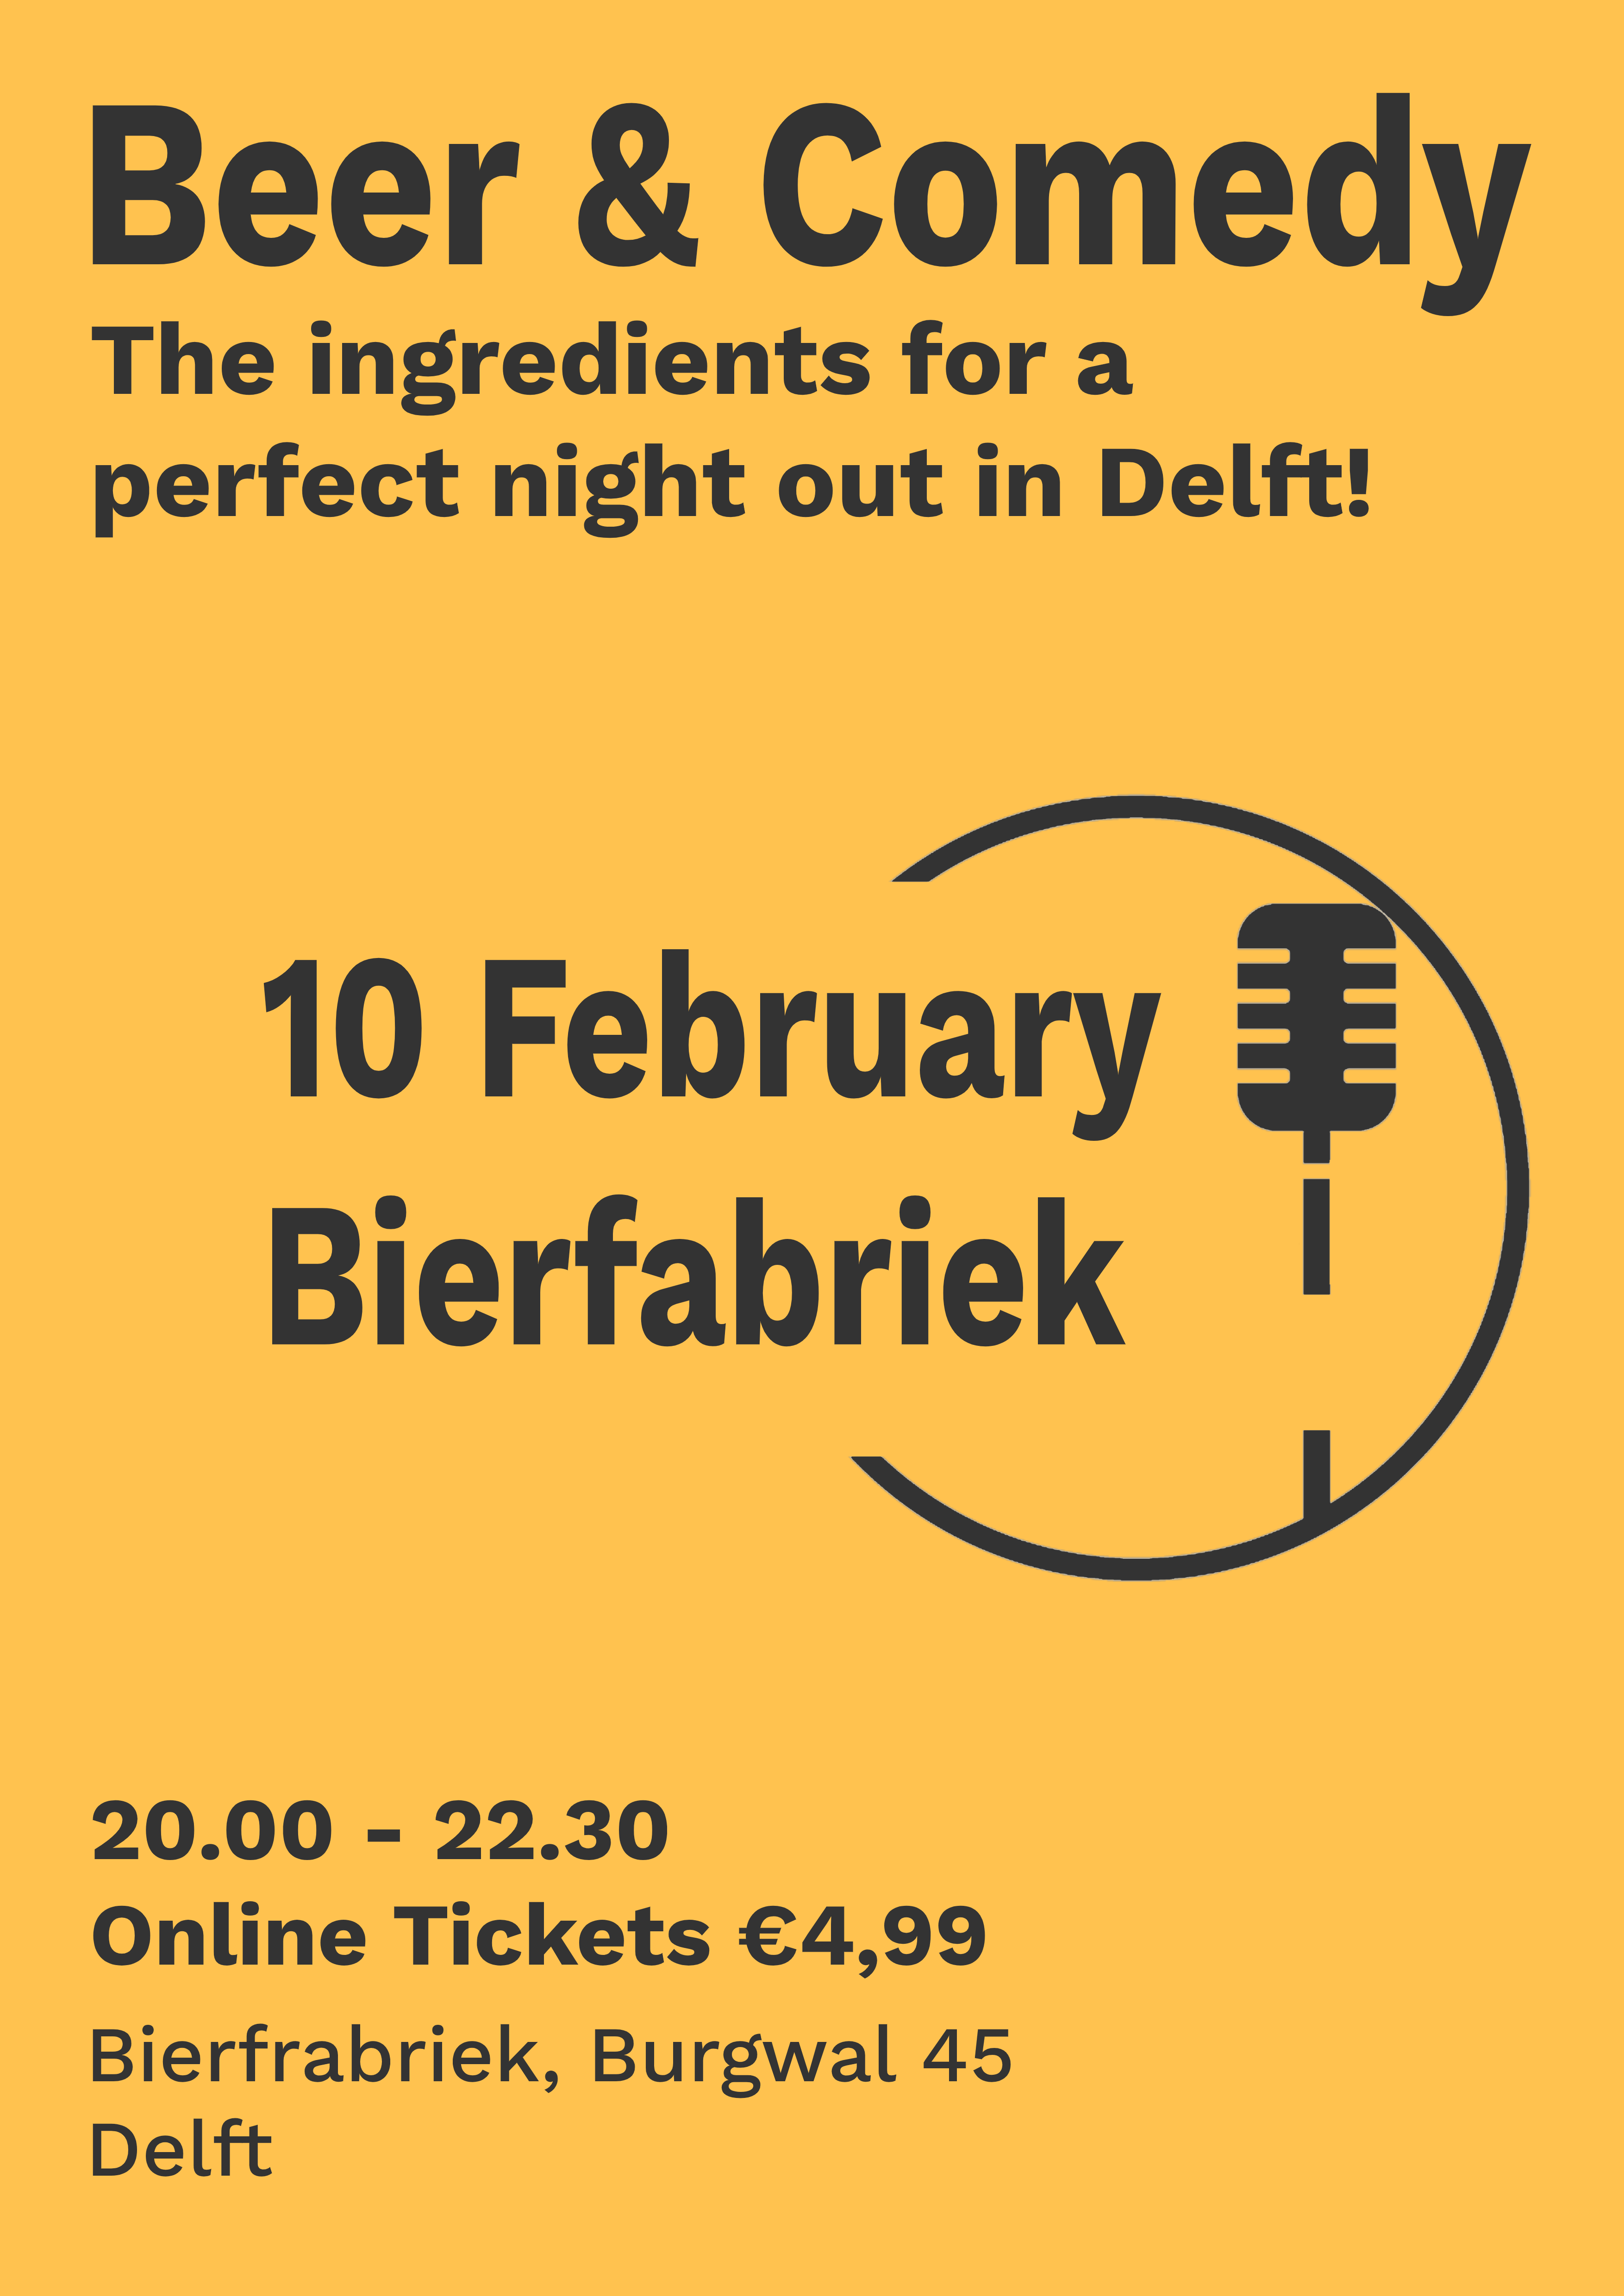 Ticket kopen voor evenement Beer & Comedy Delft 